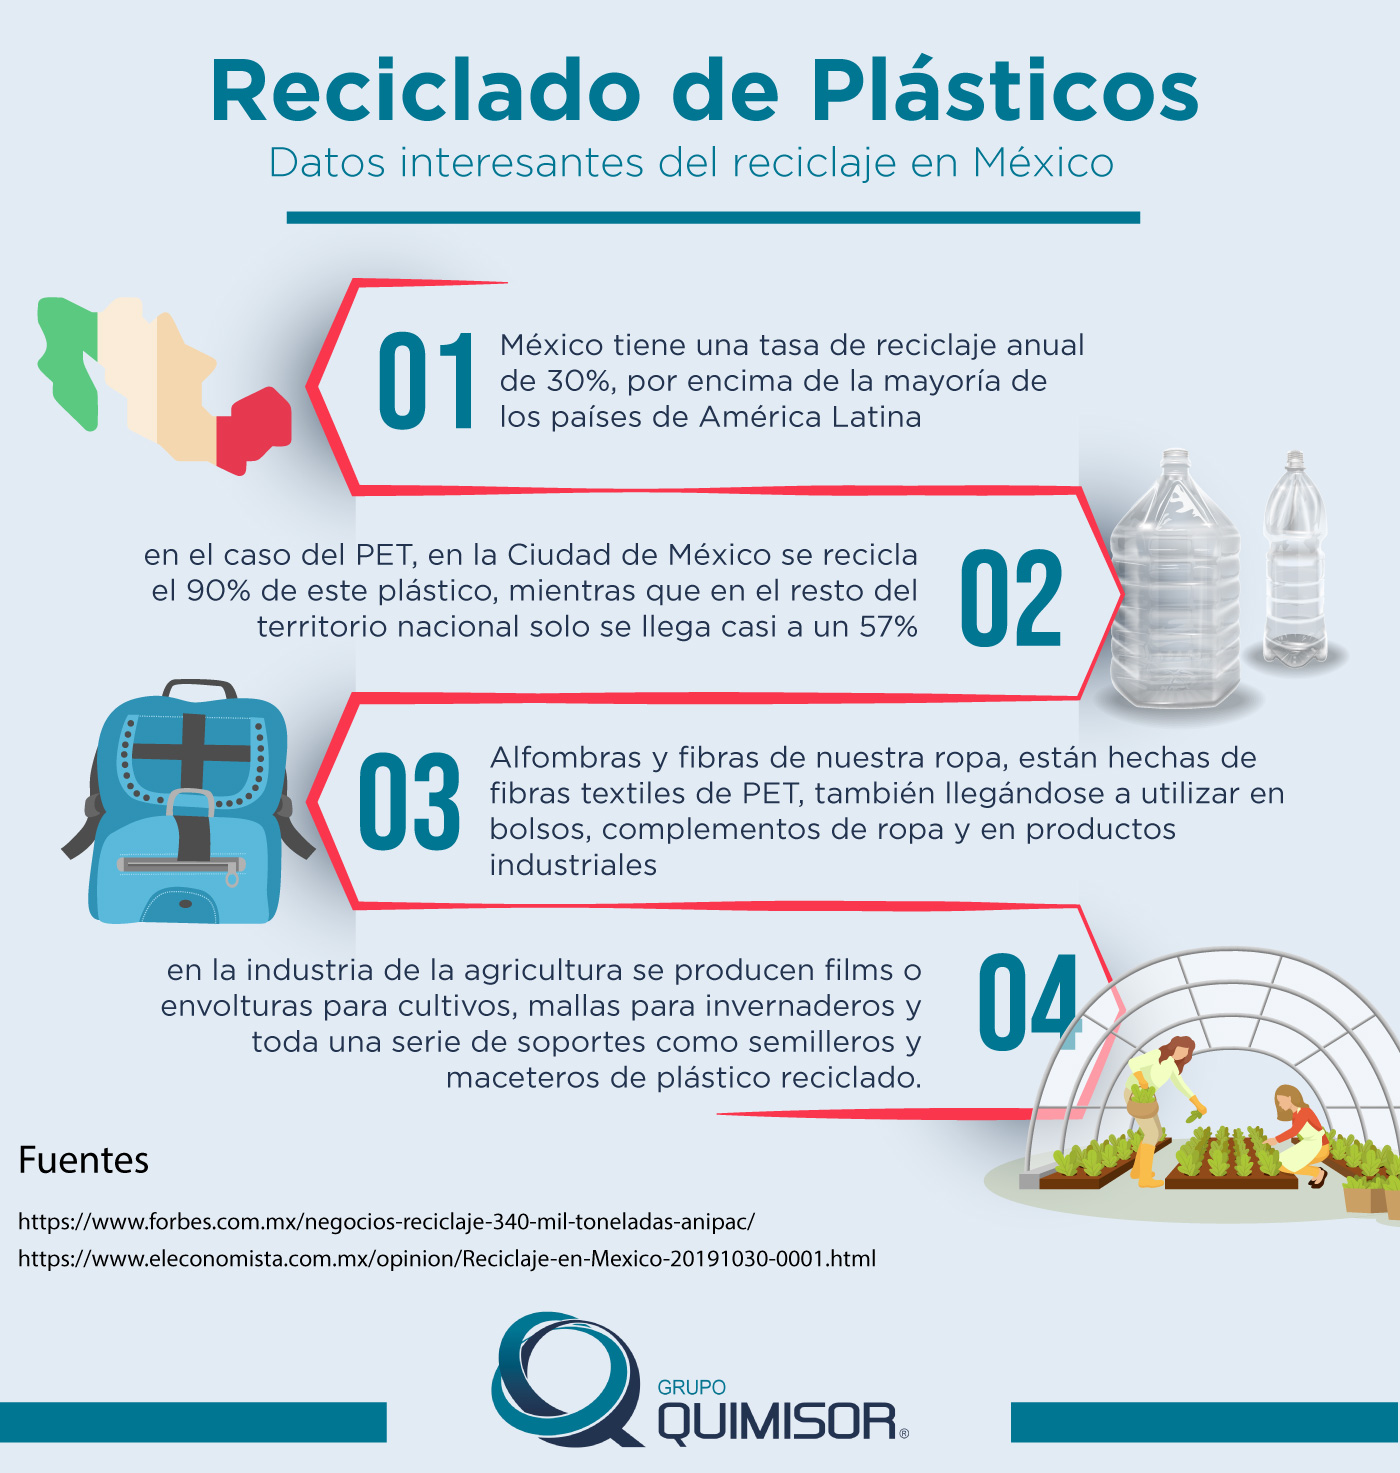 Reciclado de plásticos ¿Qué podemos reciclar y cómo hacerlo? - QUIMISOR